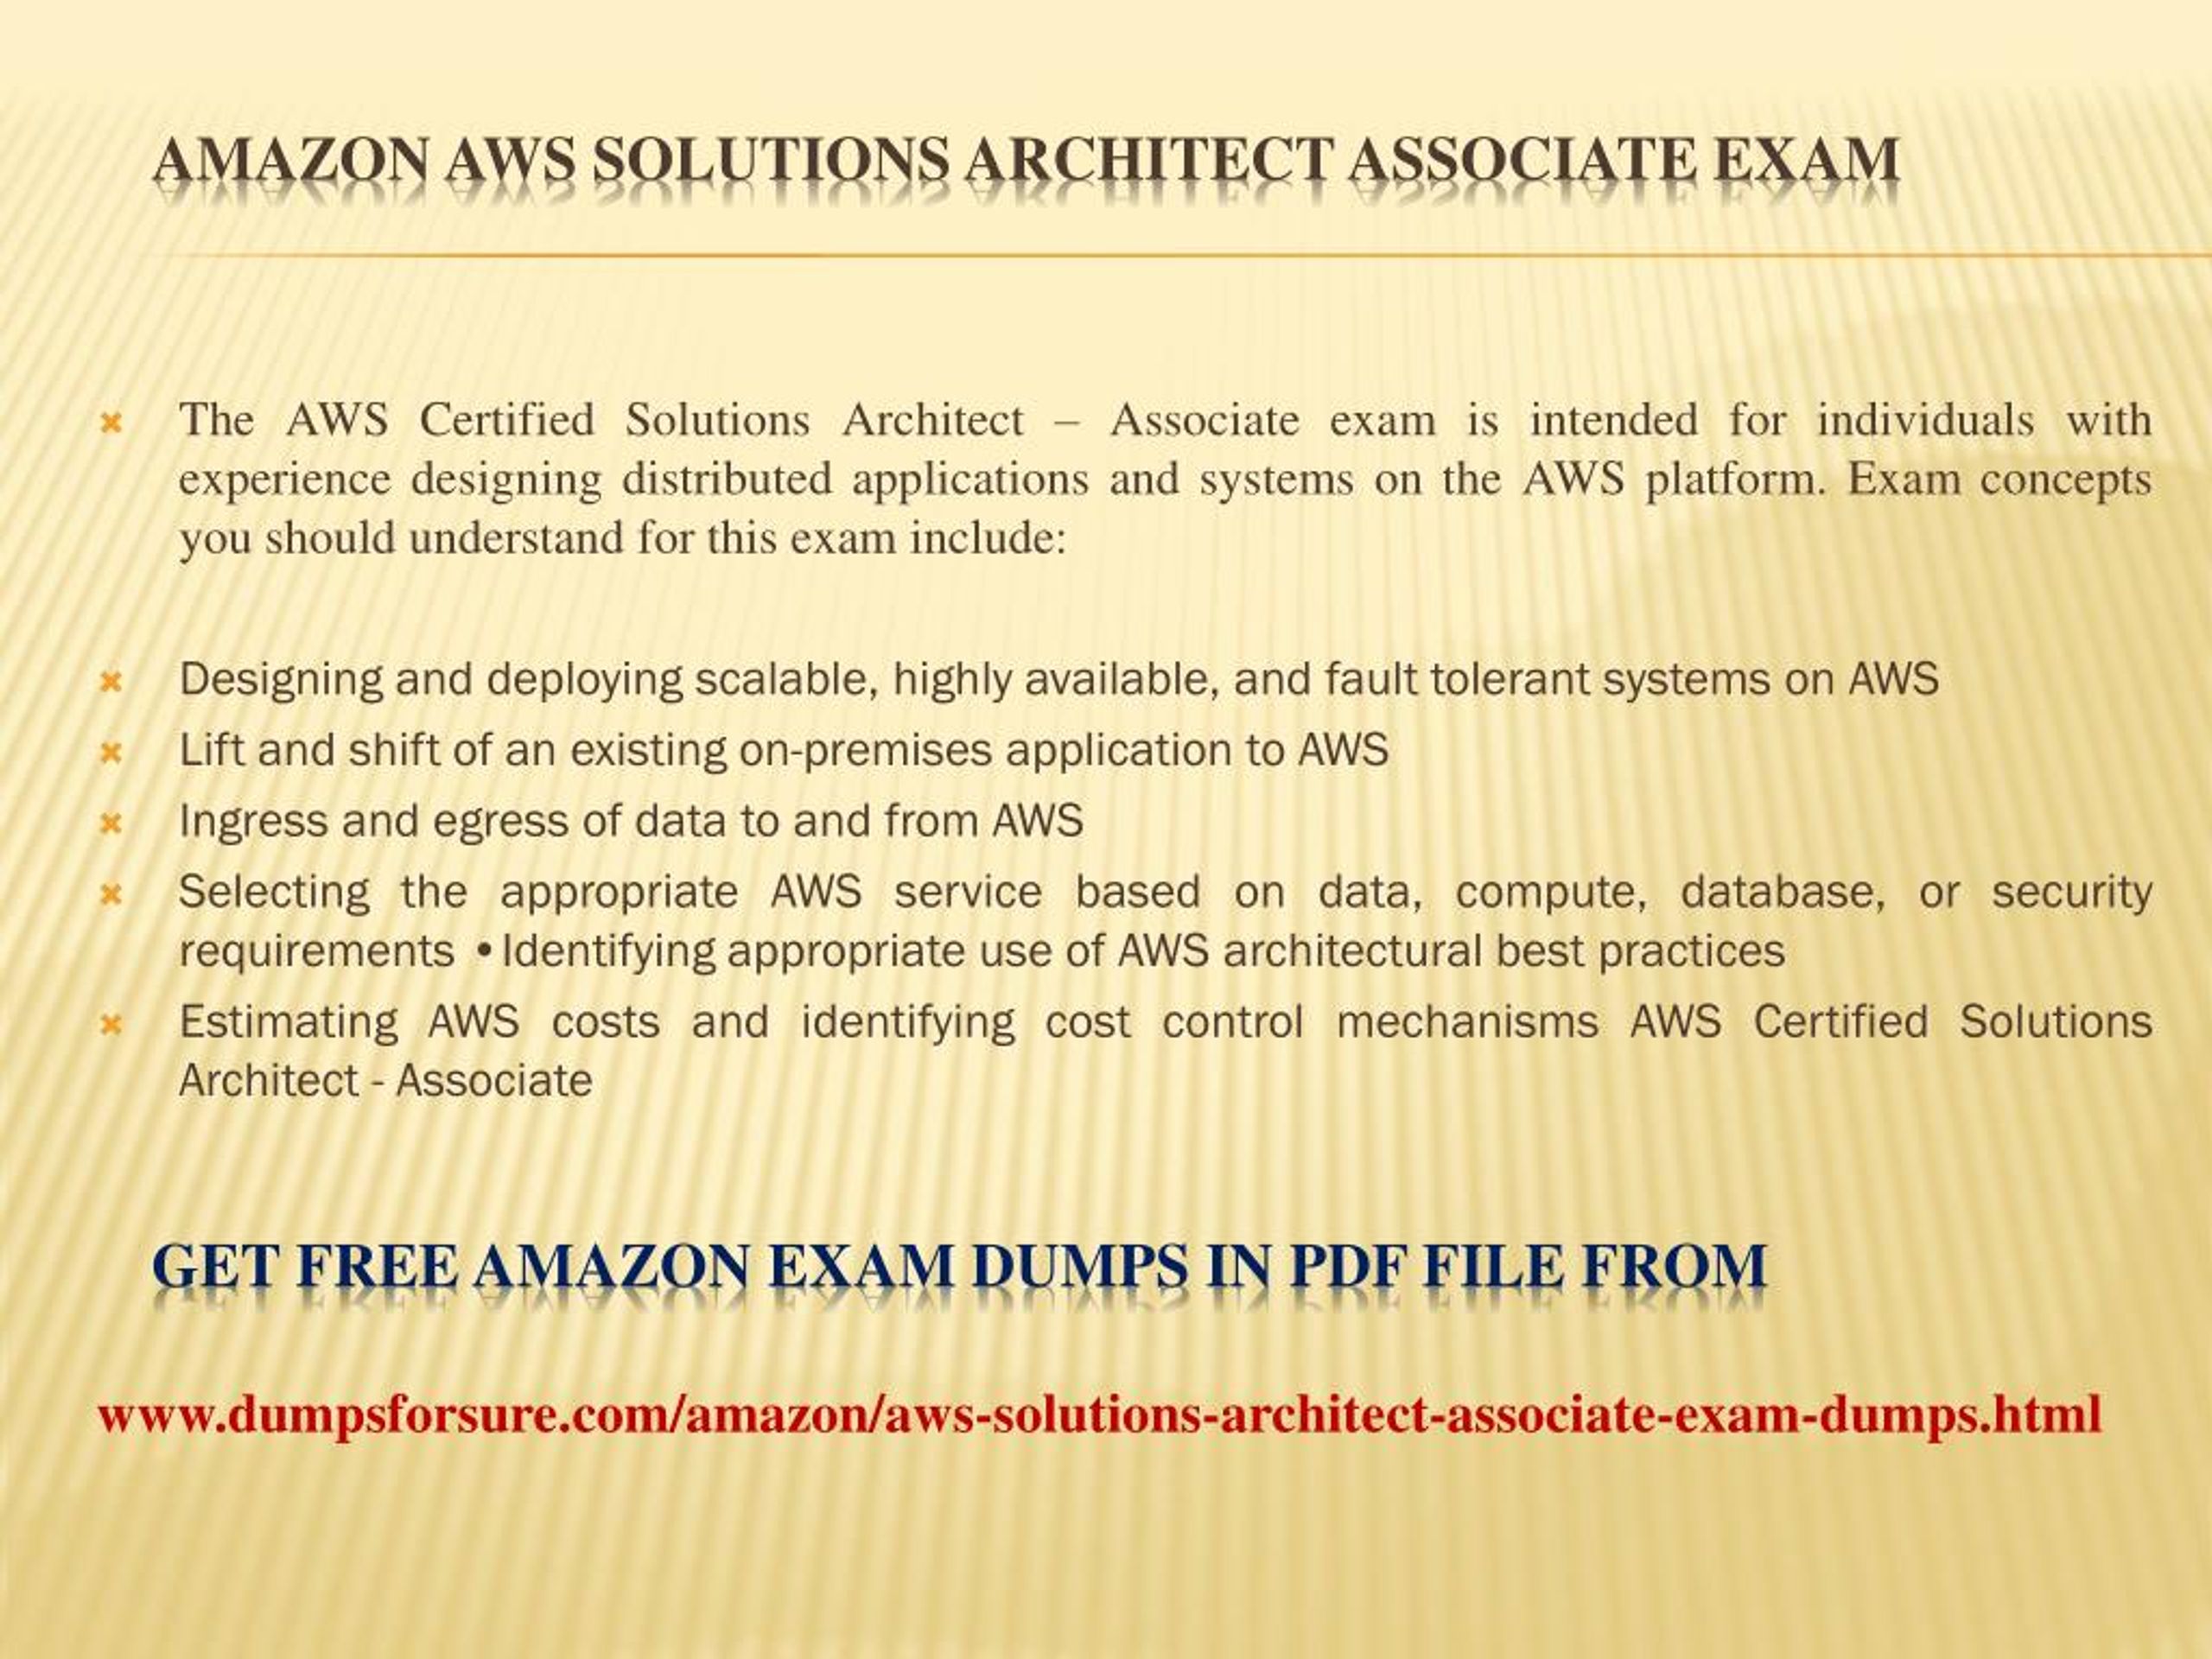 dumps for aws solution architect associate exam